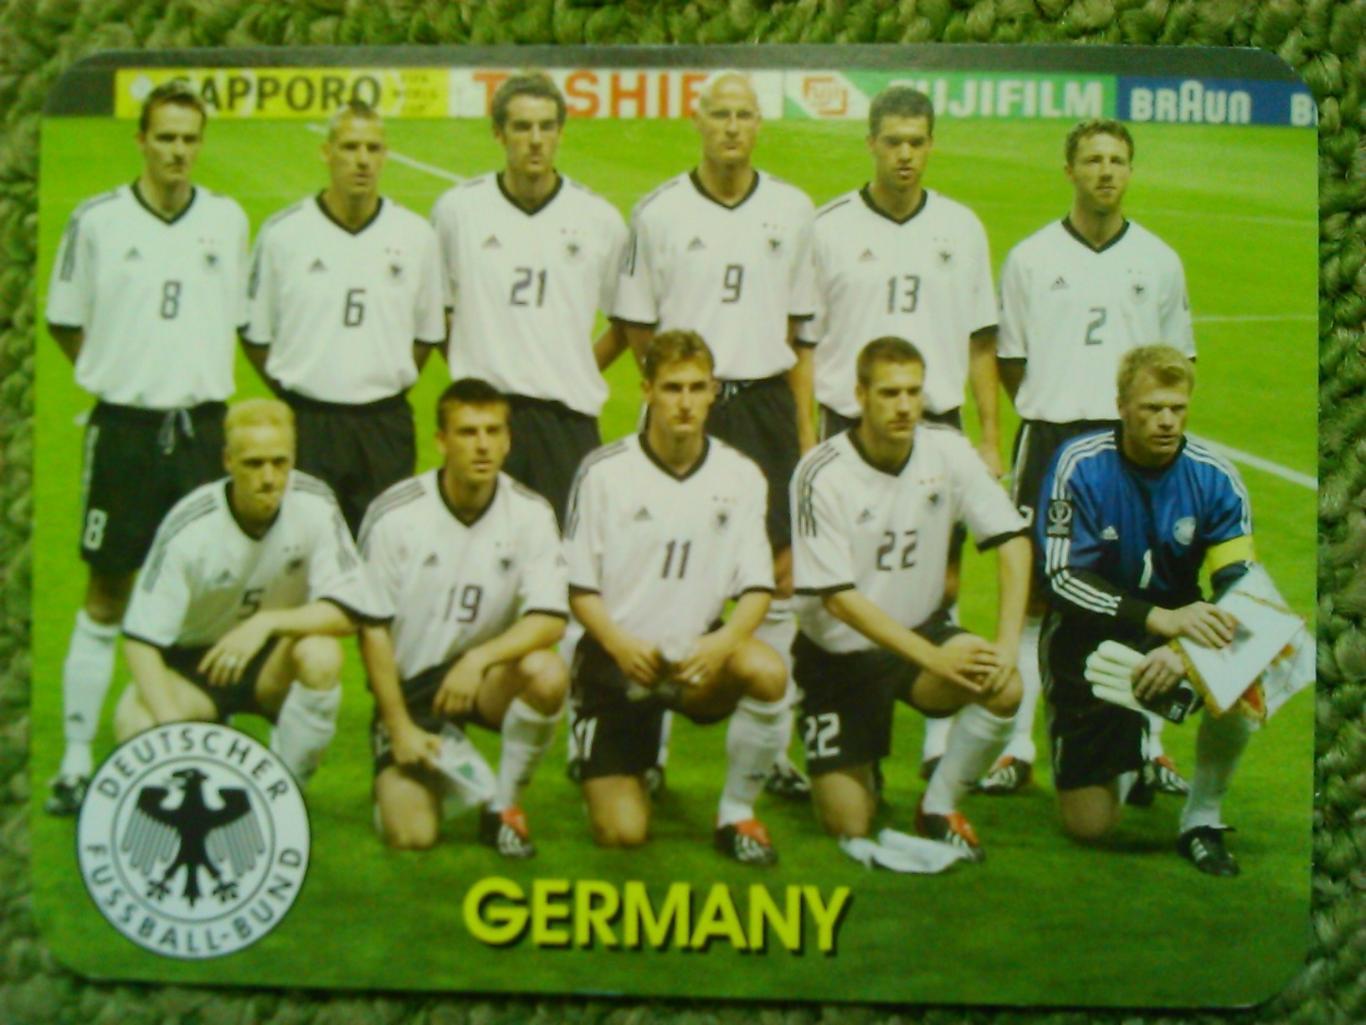 GERMANY. ГЕРМАНИЯ. НІМЕЧЧИНА календарик 2003. Оптом скидки до 45%